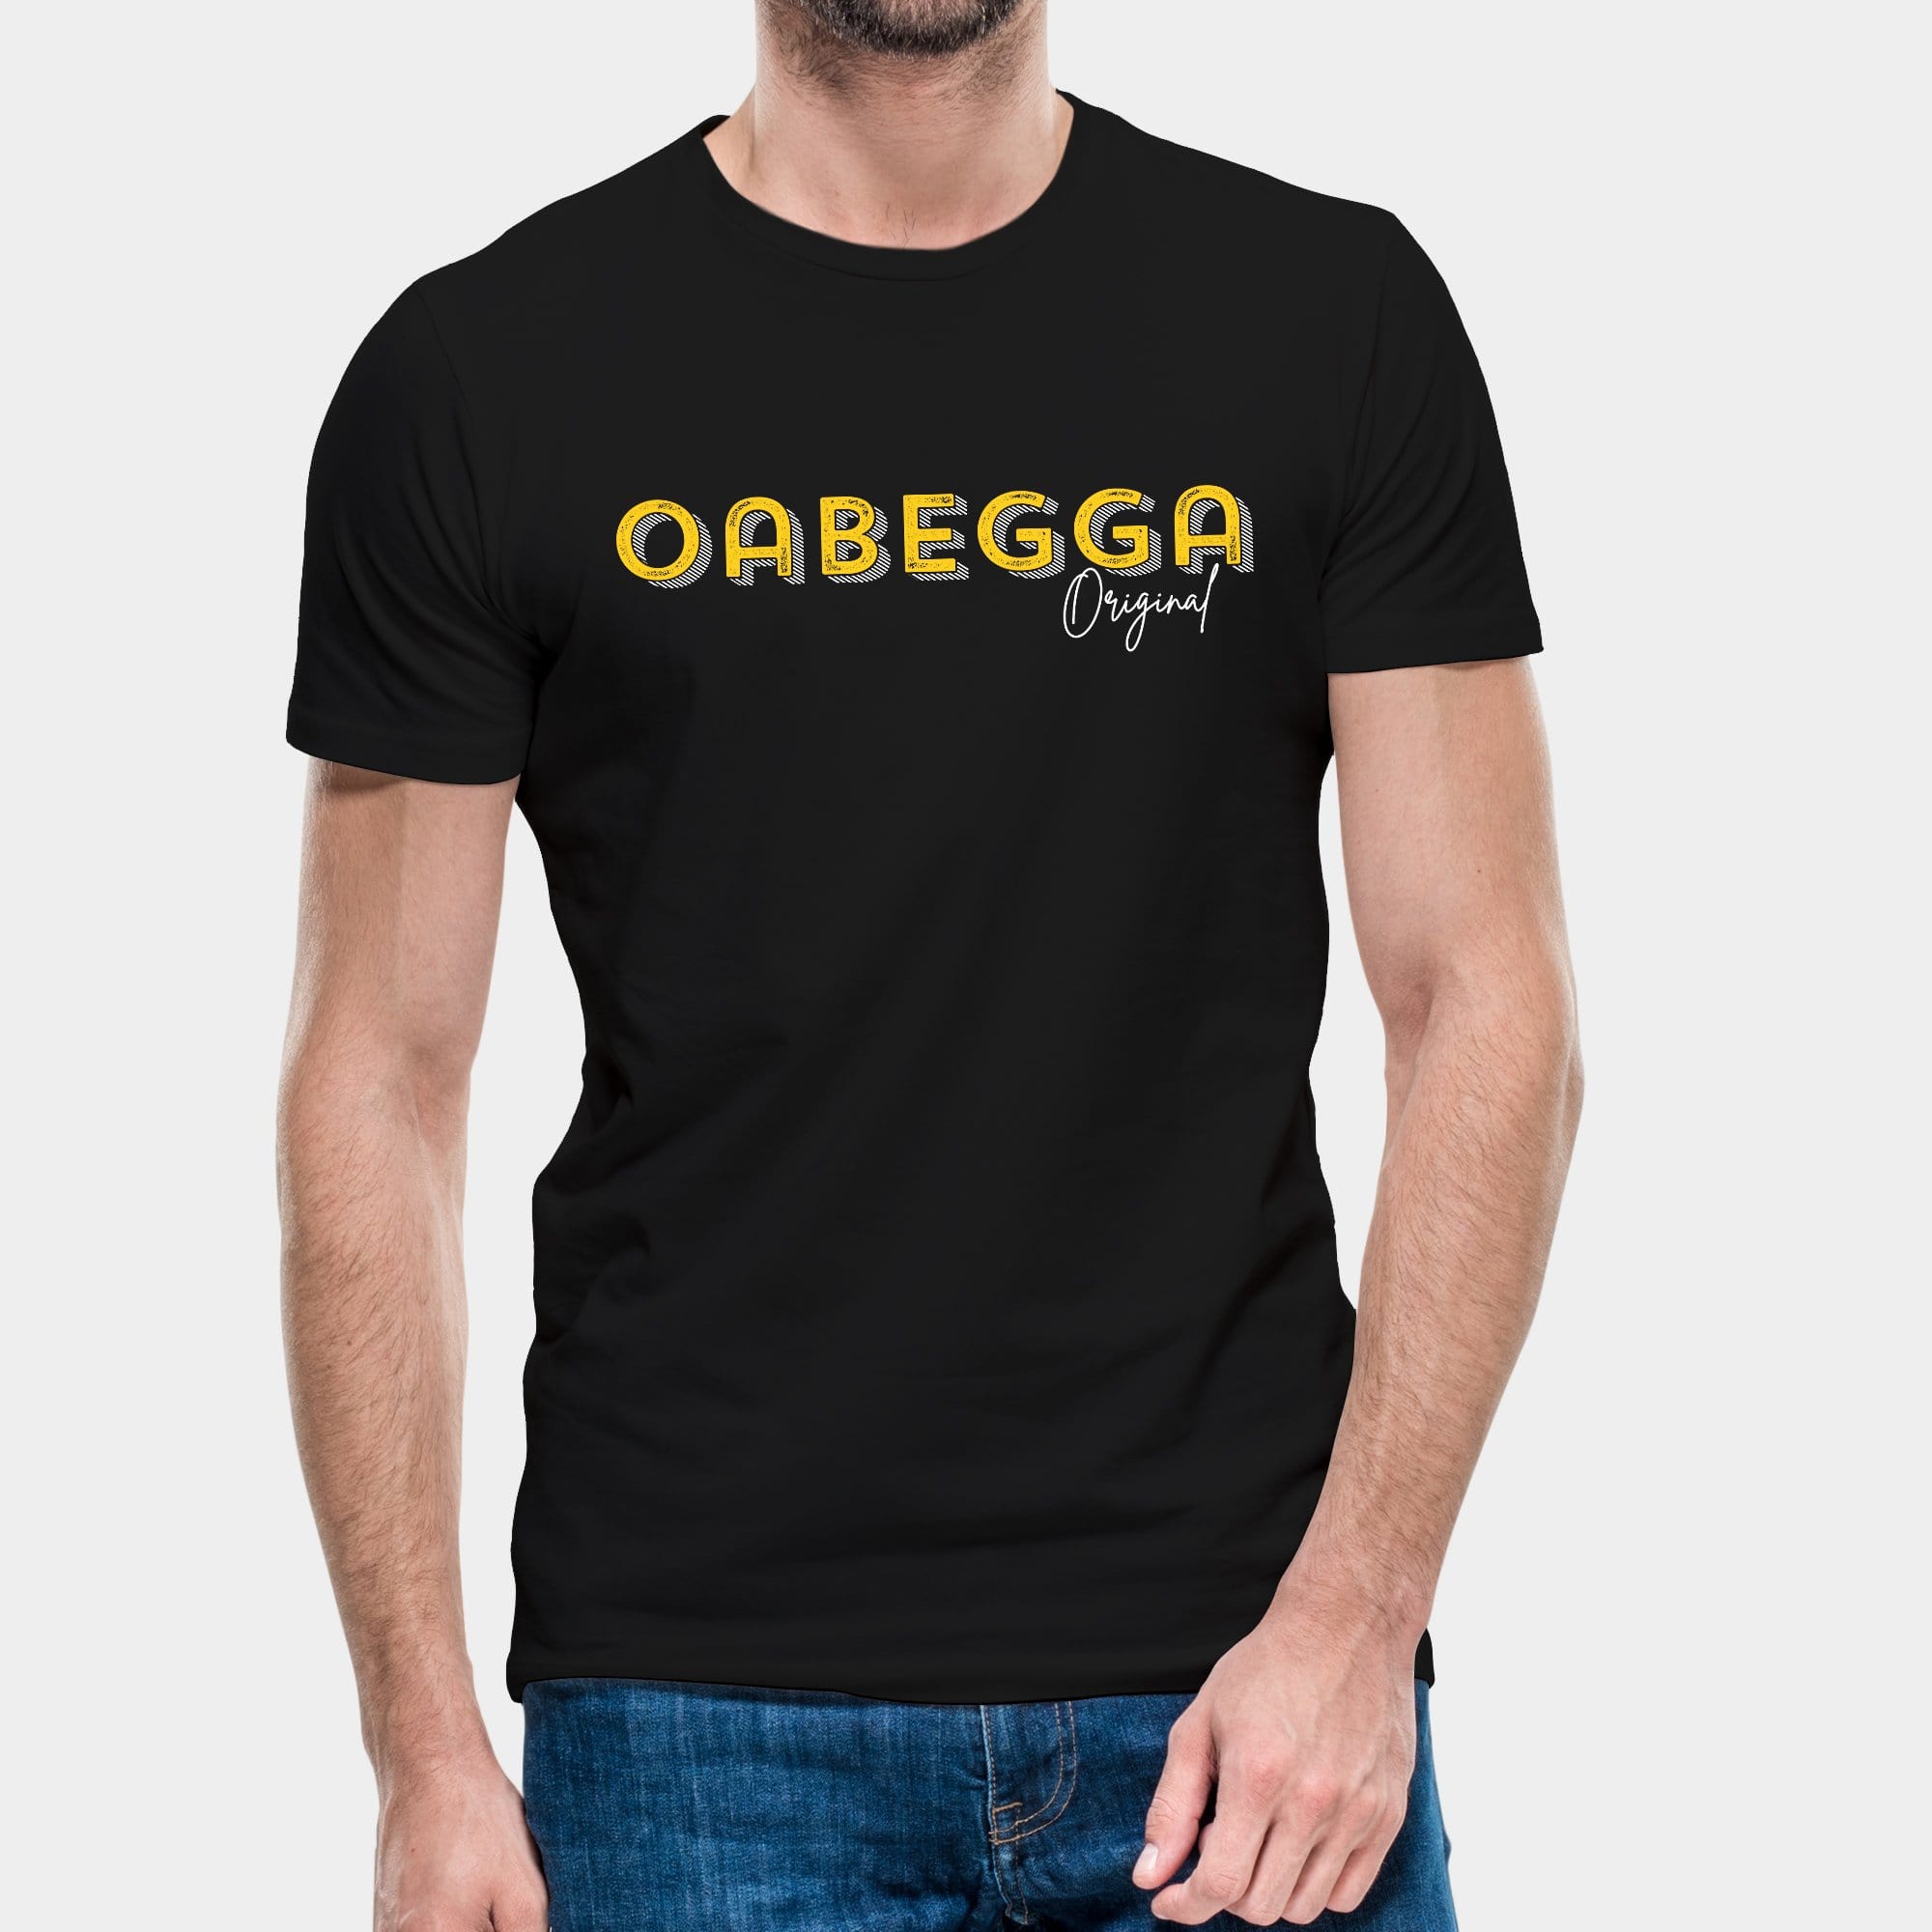 Projekt Herren-T-Shirt "Oabegga Original" S / schwarz - aus nachhaltiger und fairer Produktion